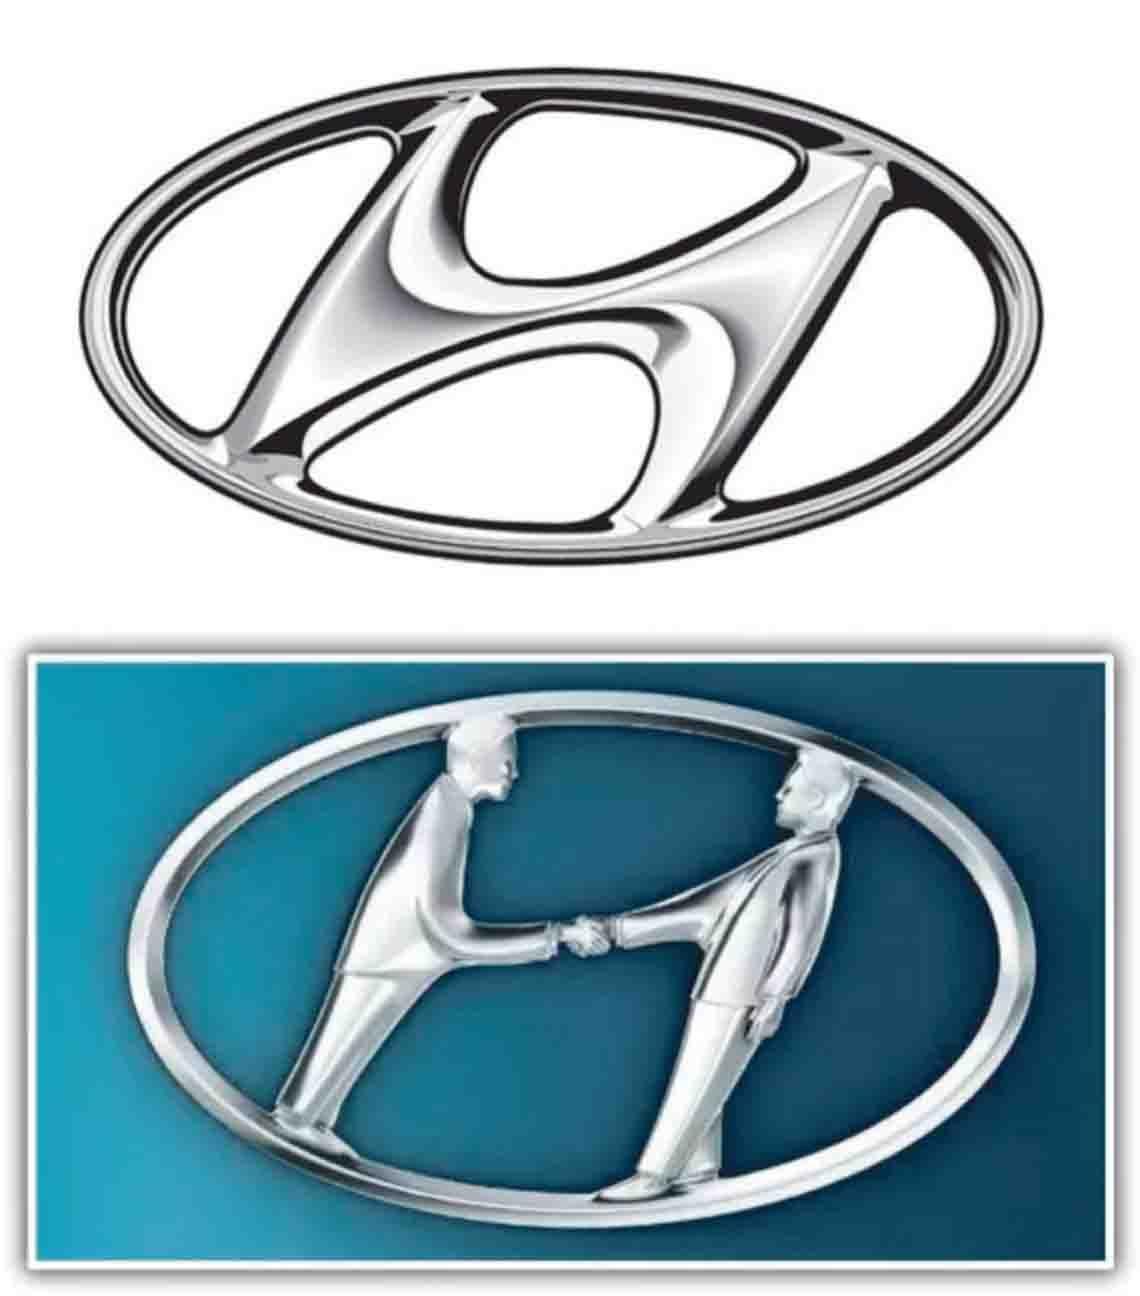 Hyundai Logo - hyundai logo merge - Serbiaring